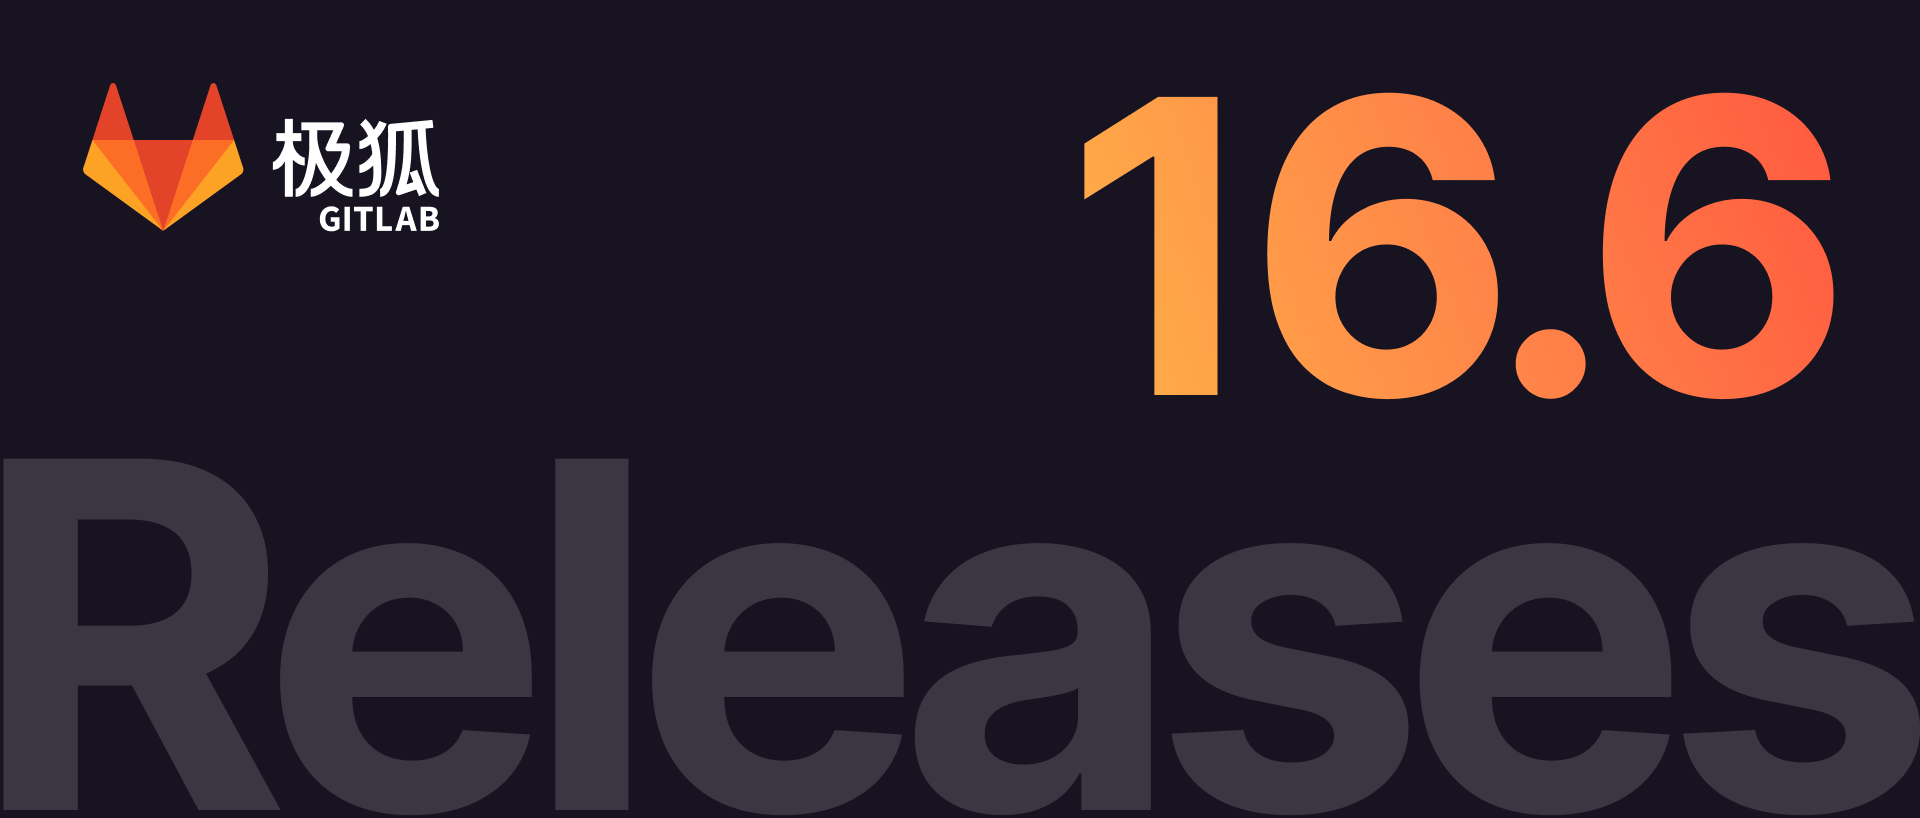 极狐GitLab 16.6 如约而至，更好的 DevOps 体验，赶快升级使用吧！